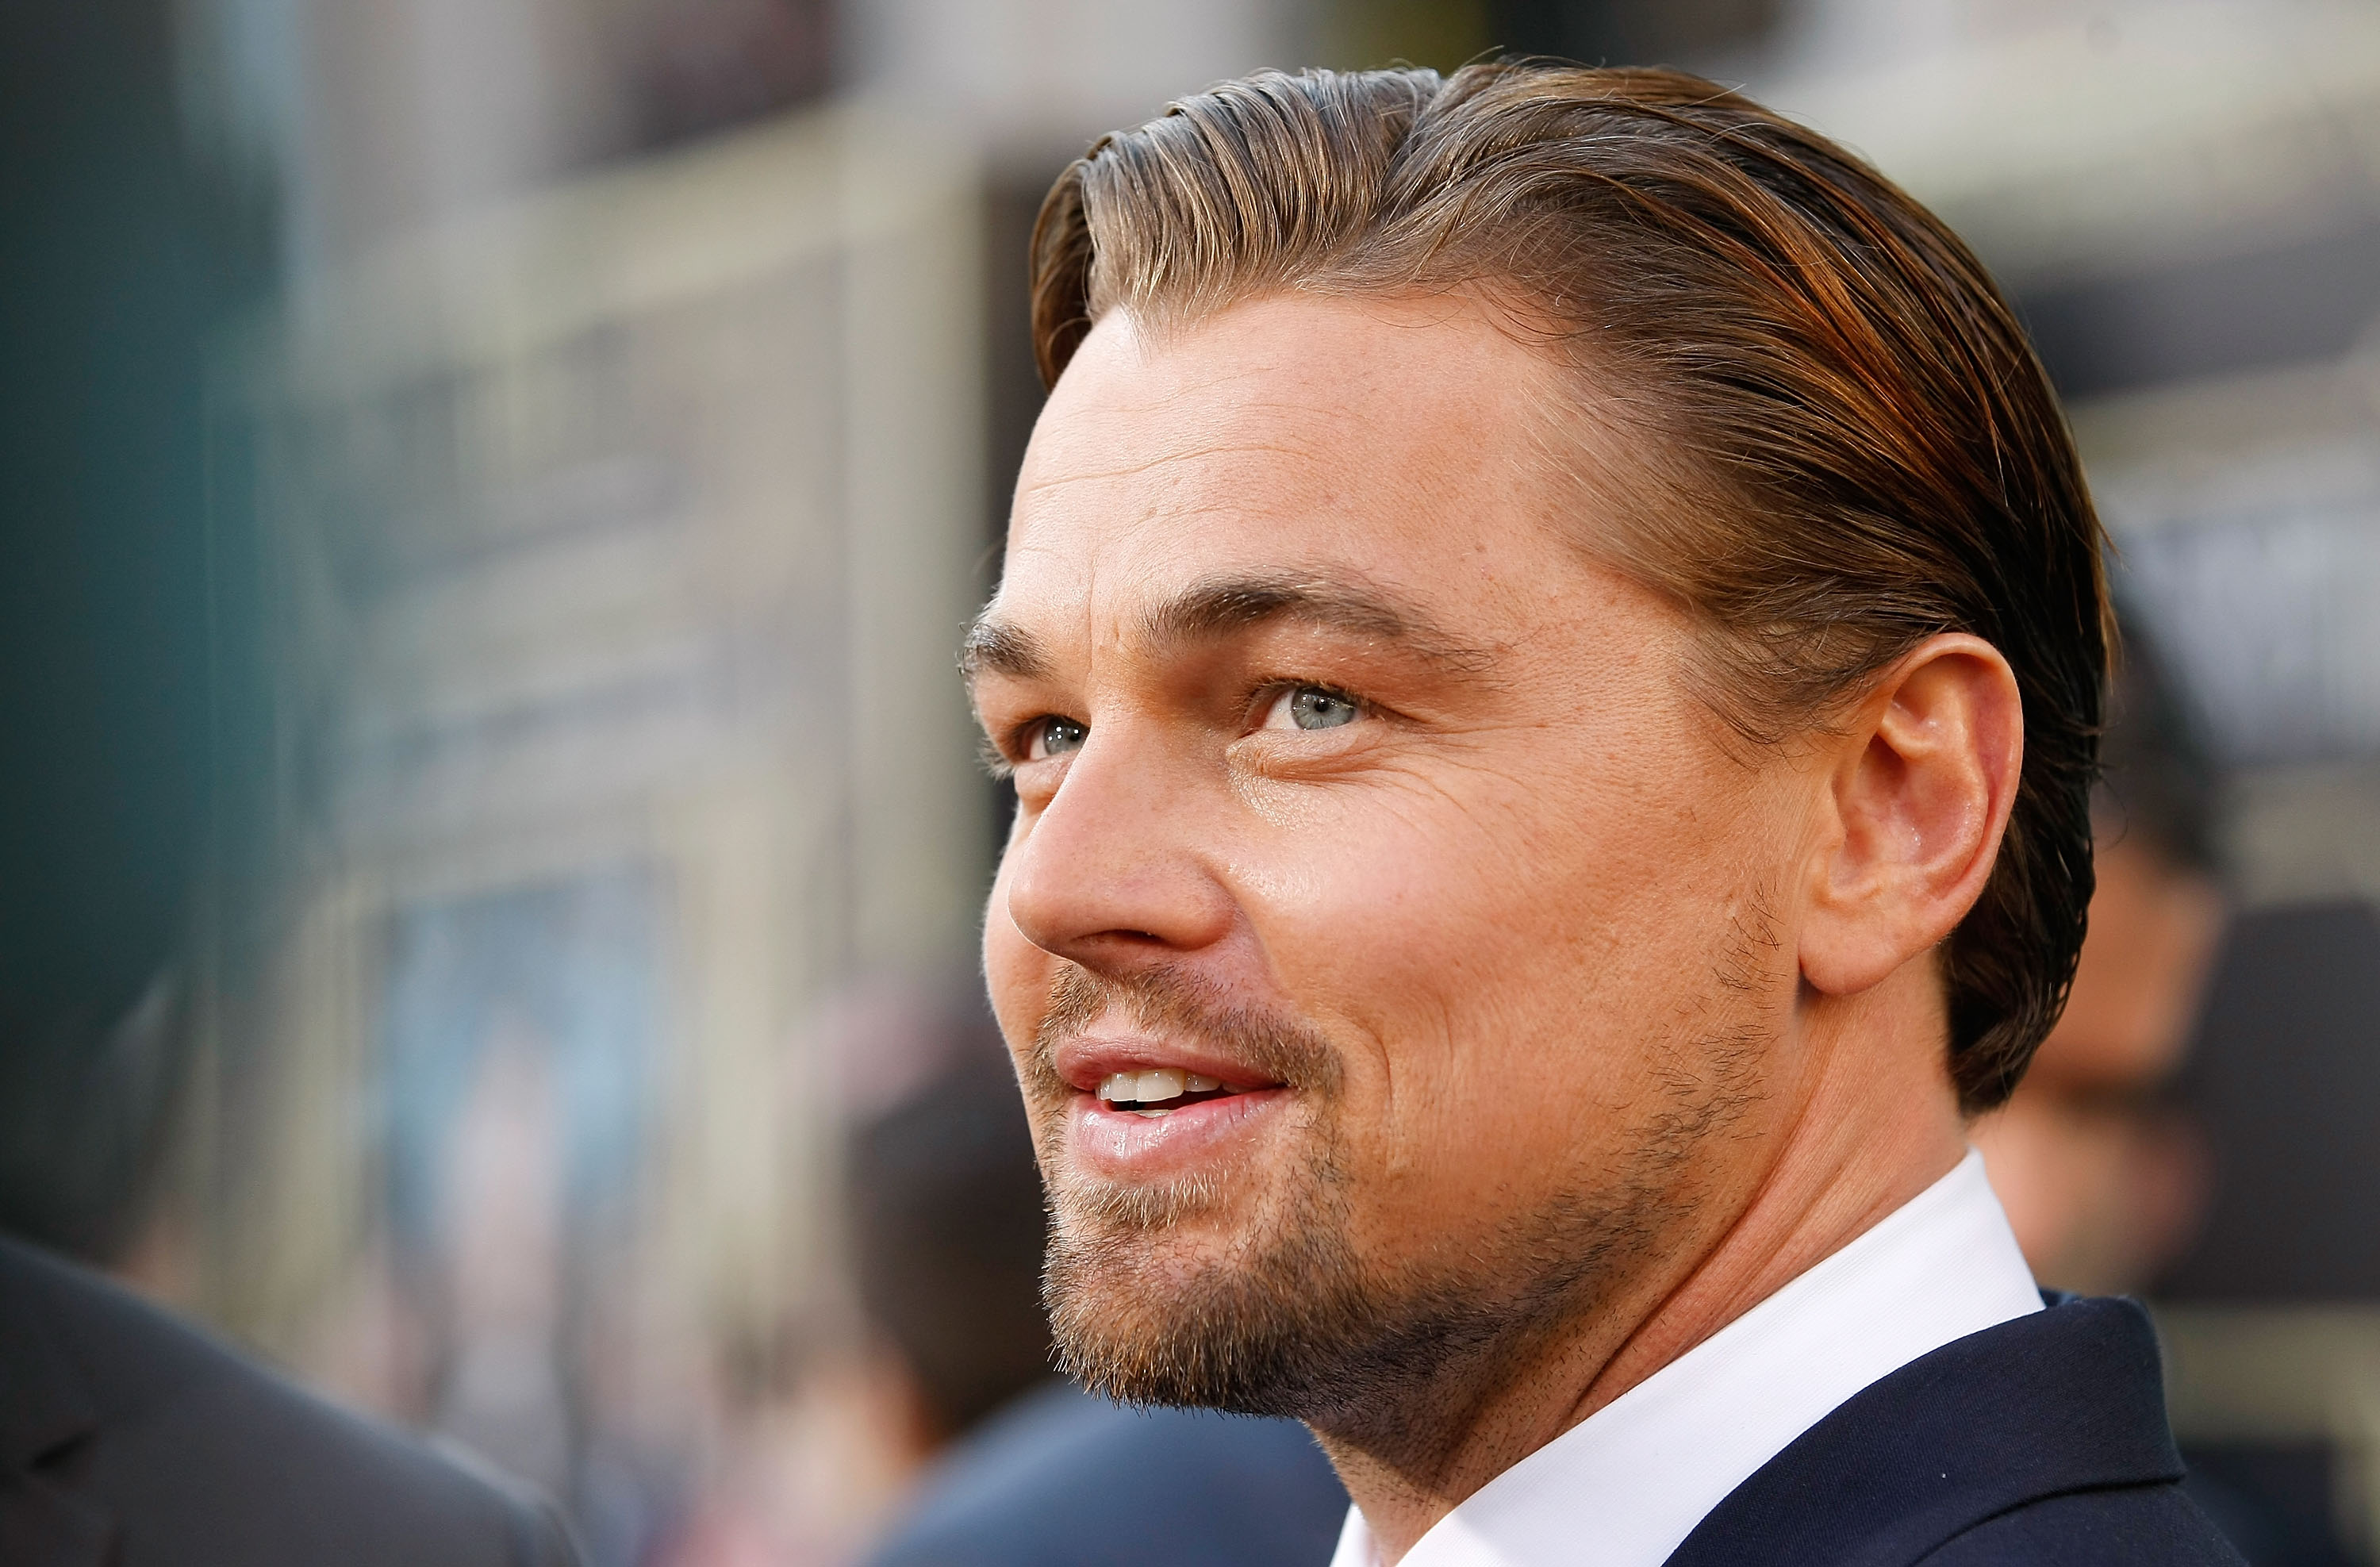 Leonardo DiCaprio Inspired the ‘Spirit’ For ‘Hocus Pocus’ Cast Choice